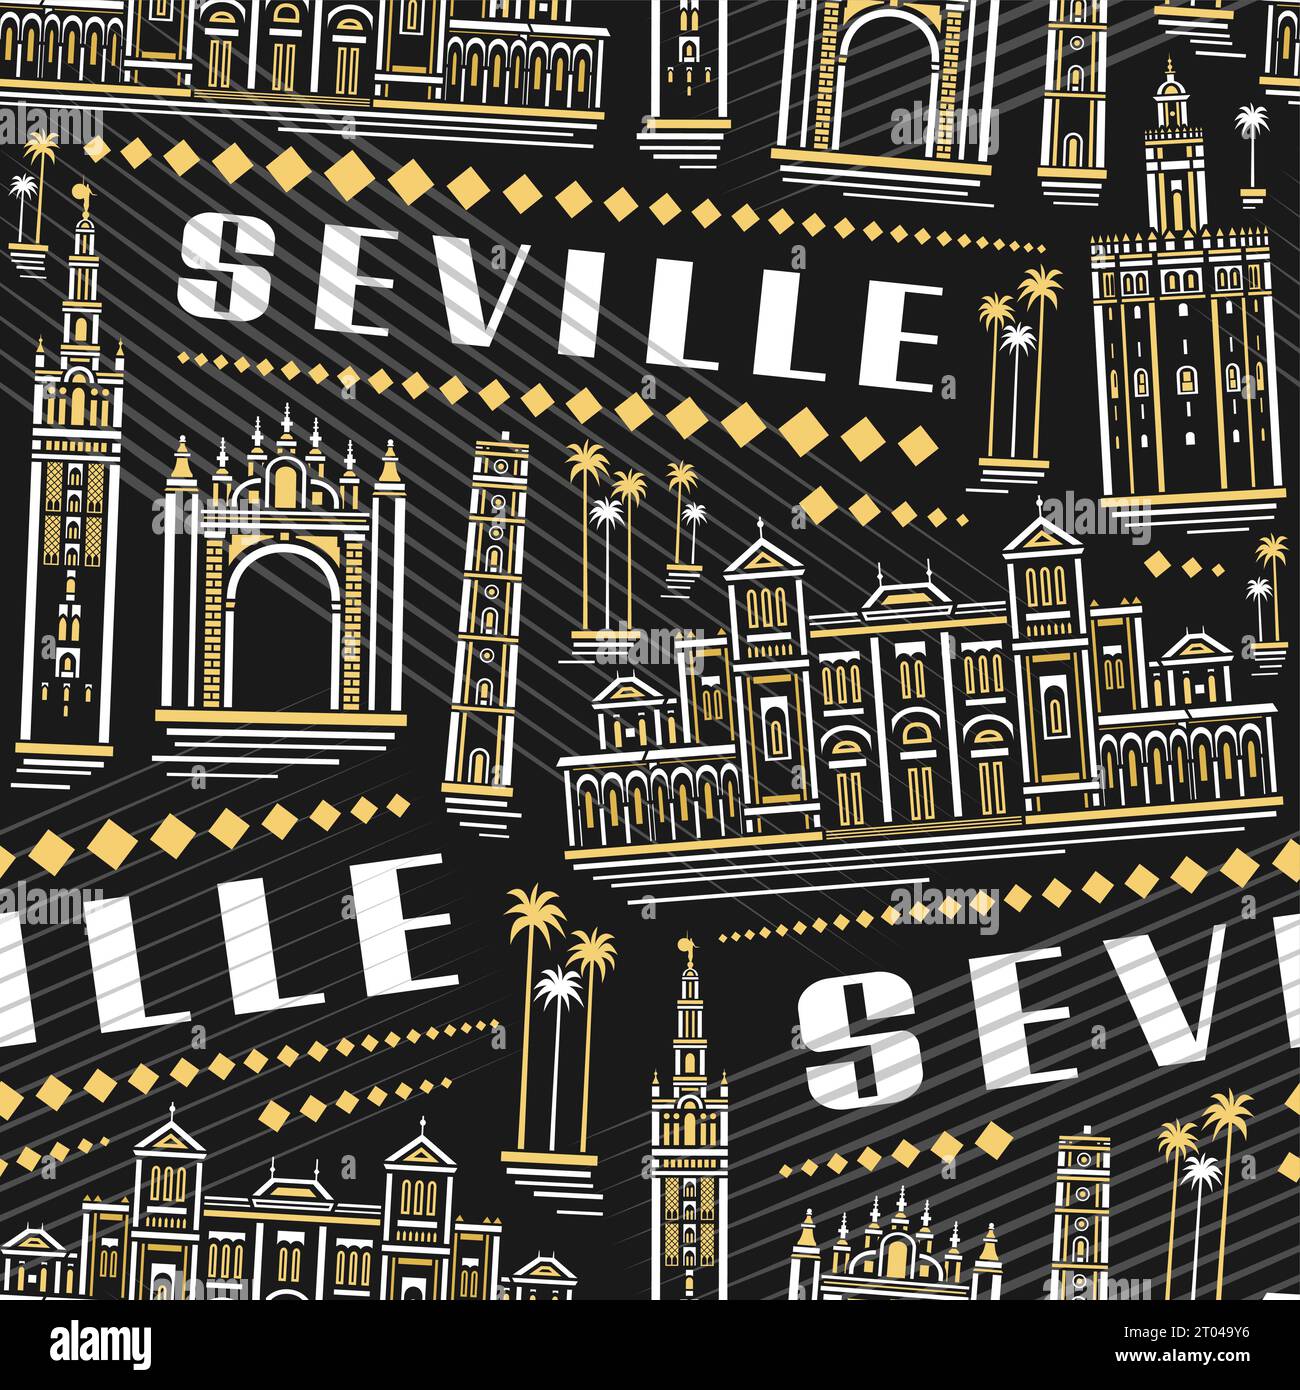 Vector Seville Seamless Pattern, répétition carrée de fond avec illustration du célèbre paysage européen de la ville de séville sur fond sombre pour le linge de lit, de Illustration de Vecteur